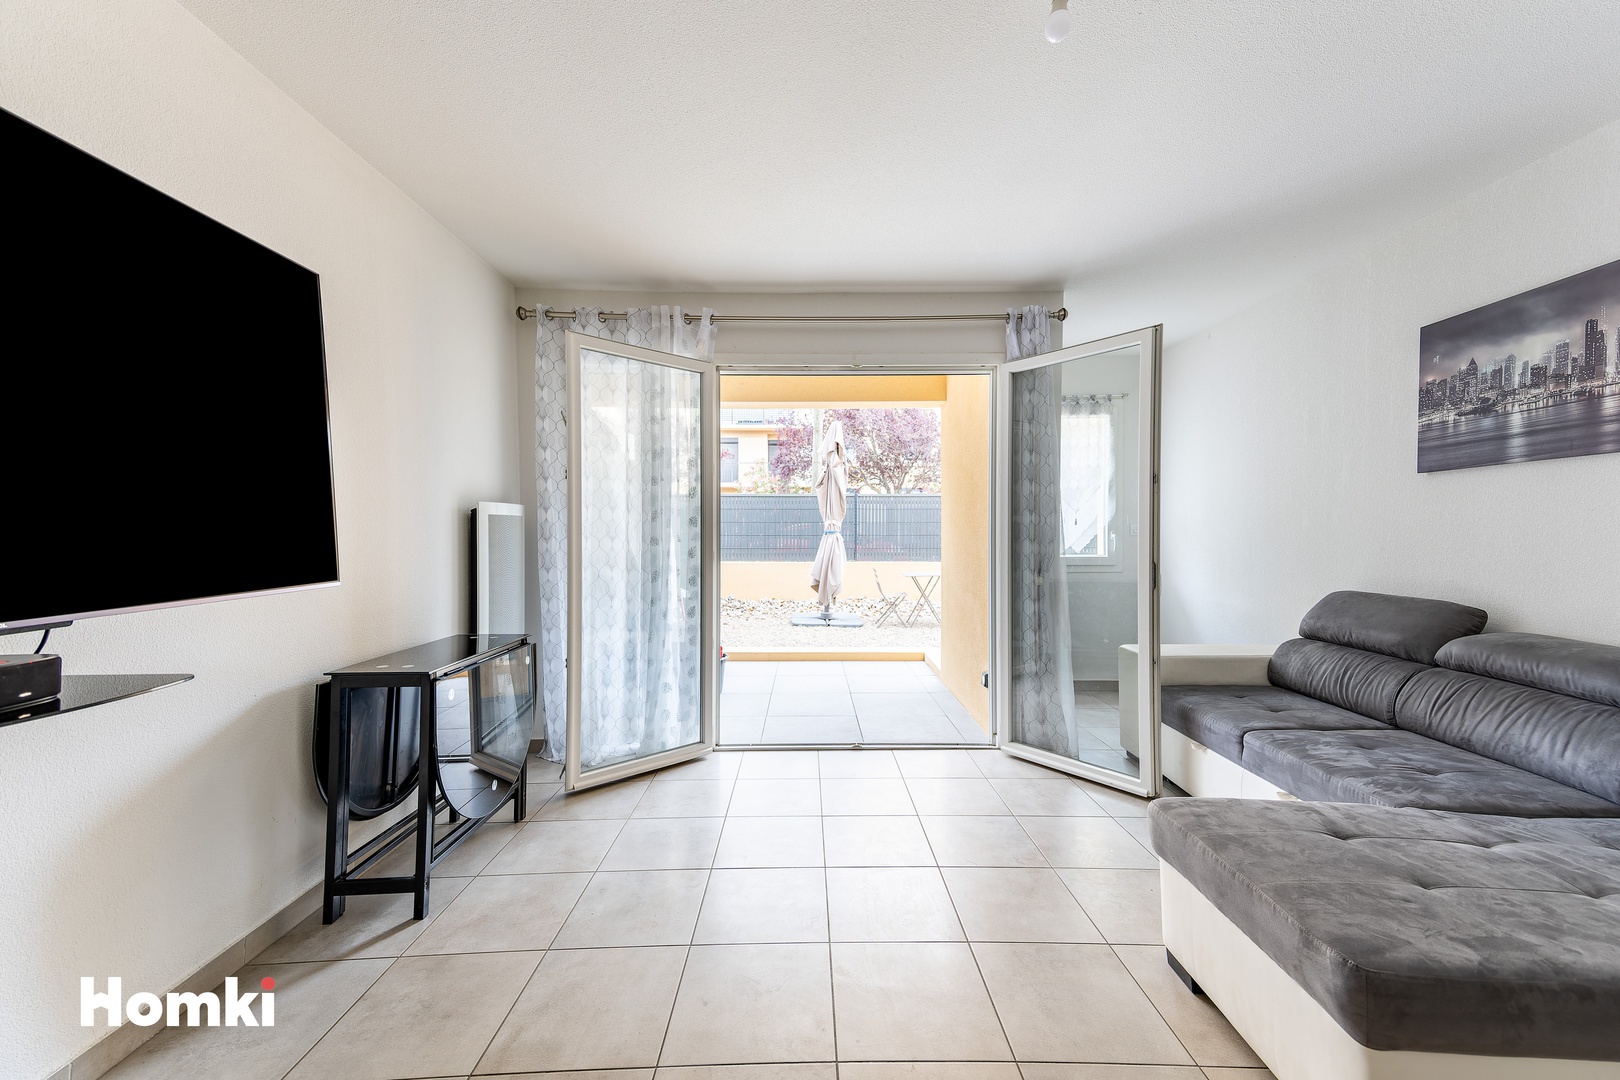 Homki - Vente Appartement  de 45.83 m² à Narbonne 11100